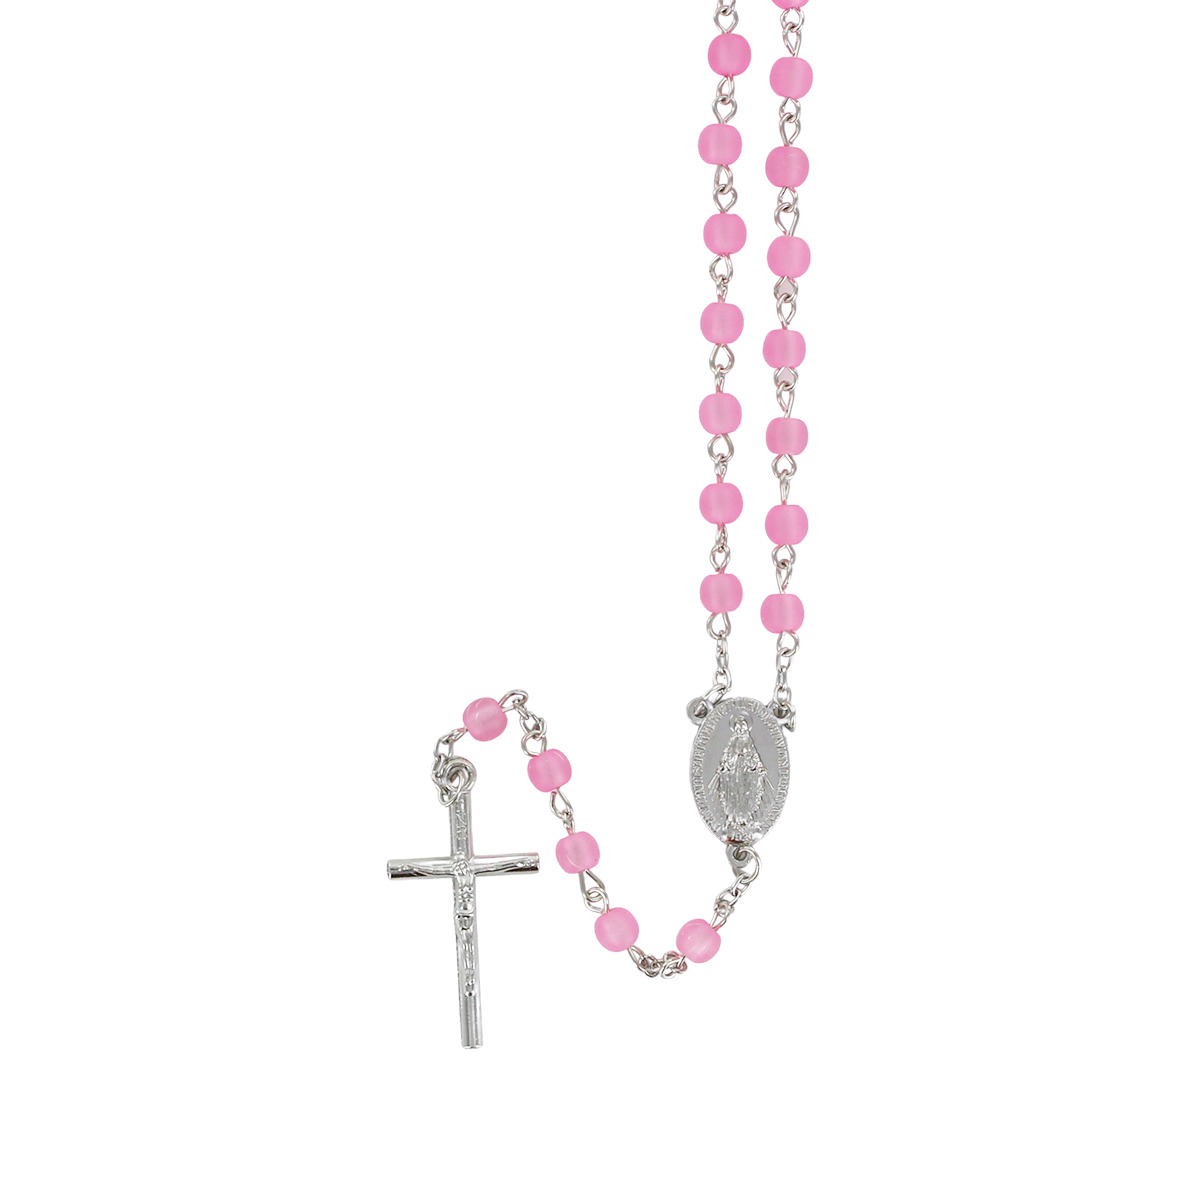 Chapelet grains opaques, Ø 6 mm, chaîne couleur argentée, longueur au cœur 33 cm, croix avec Christ.